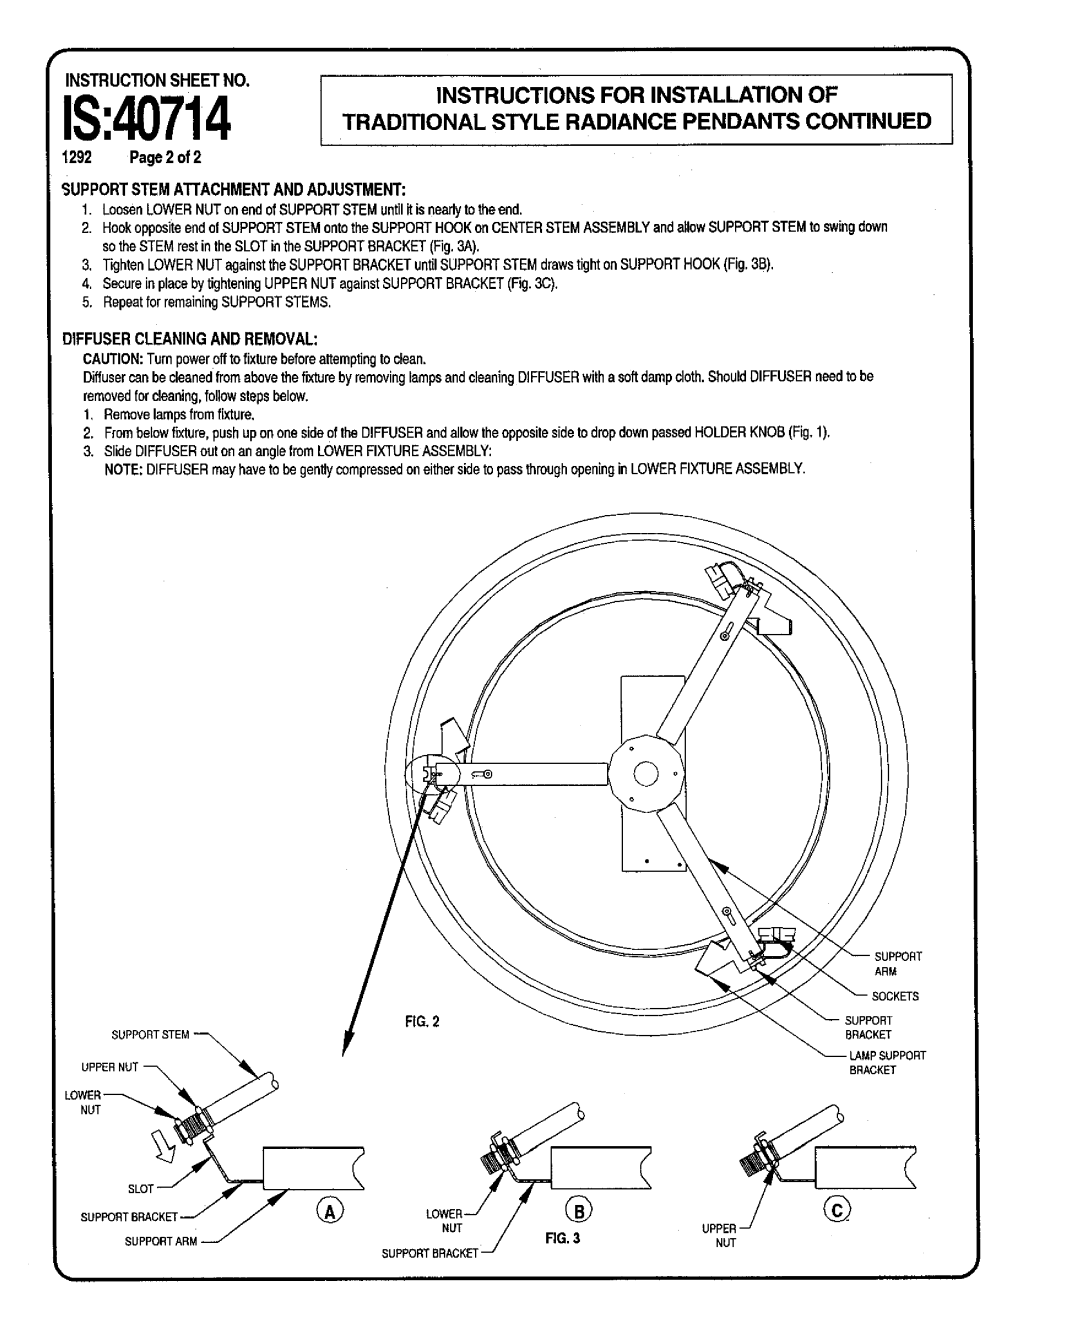 Lightolier IS:40714 instruction sheet I “Jk, Instructions For Installation Of 